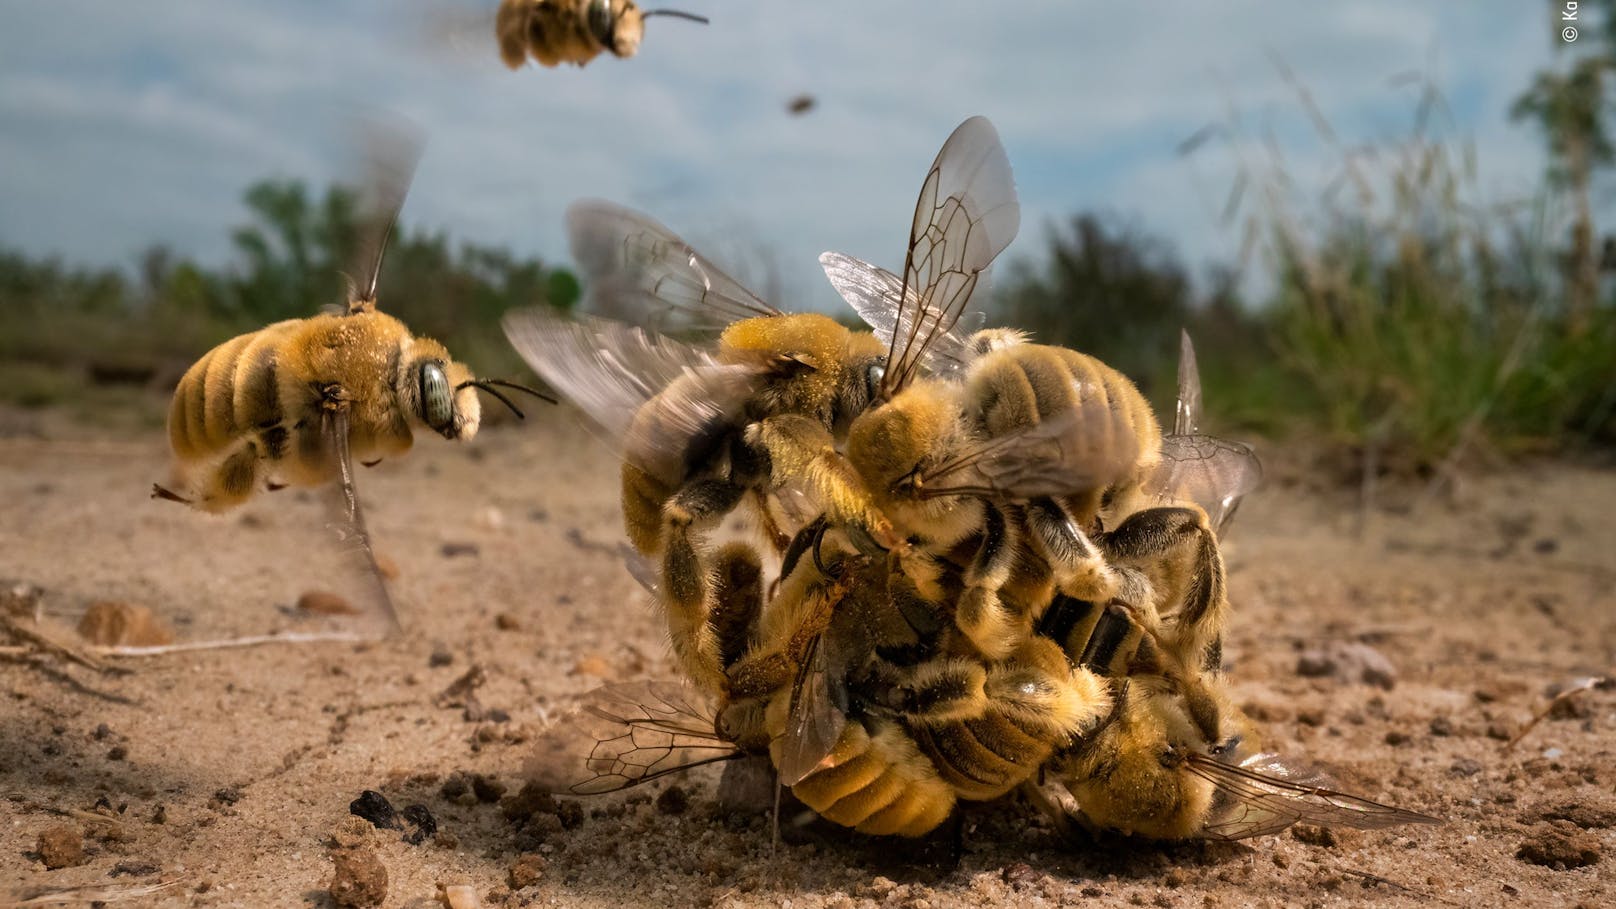 Das Gewinnerbild der männlichen Bienen im Kampf um die Königin gewann den "Wildlife Photographer of the Year 2022" Wettbewerb.